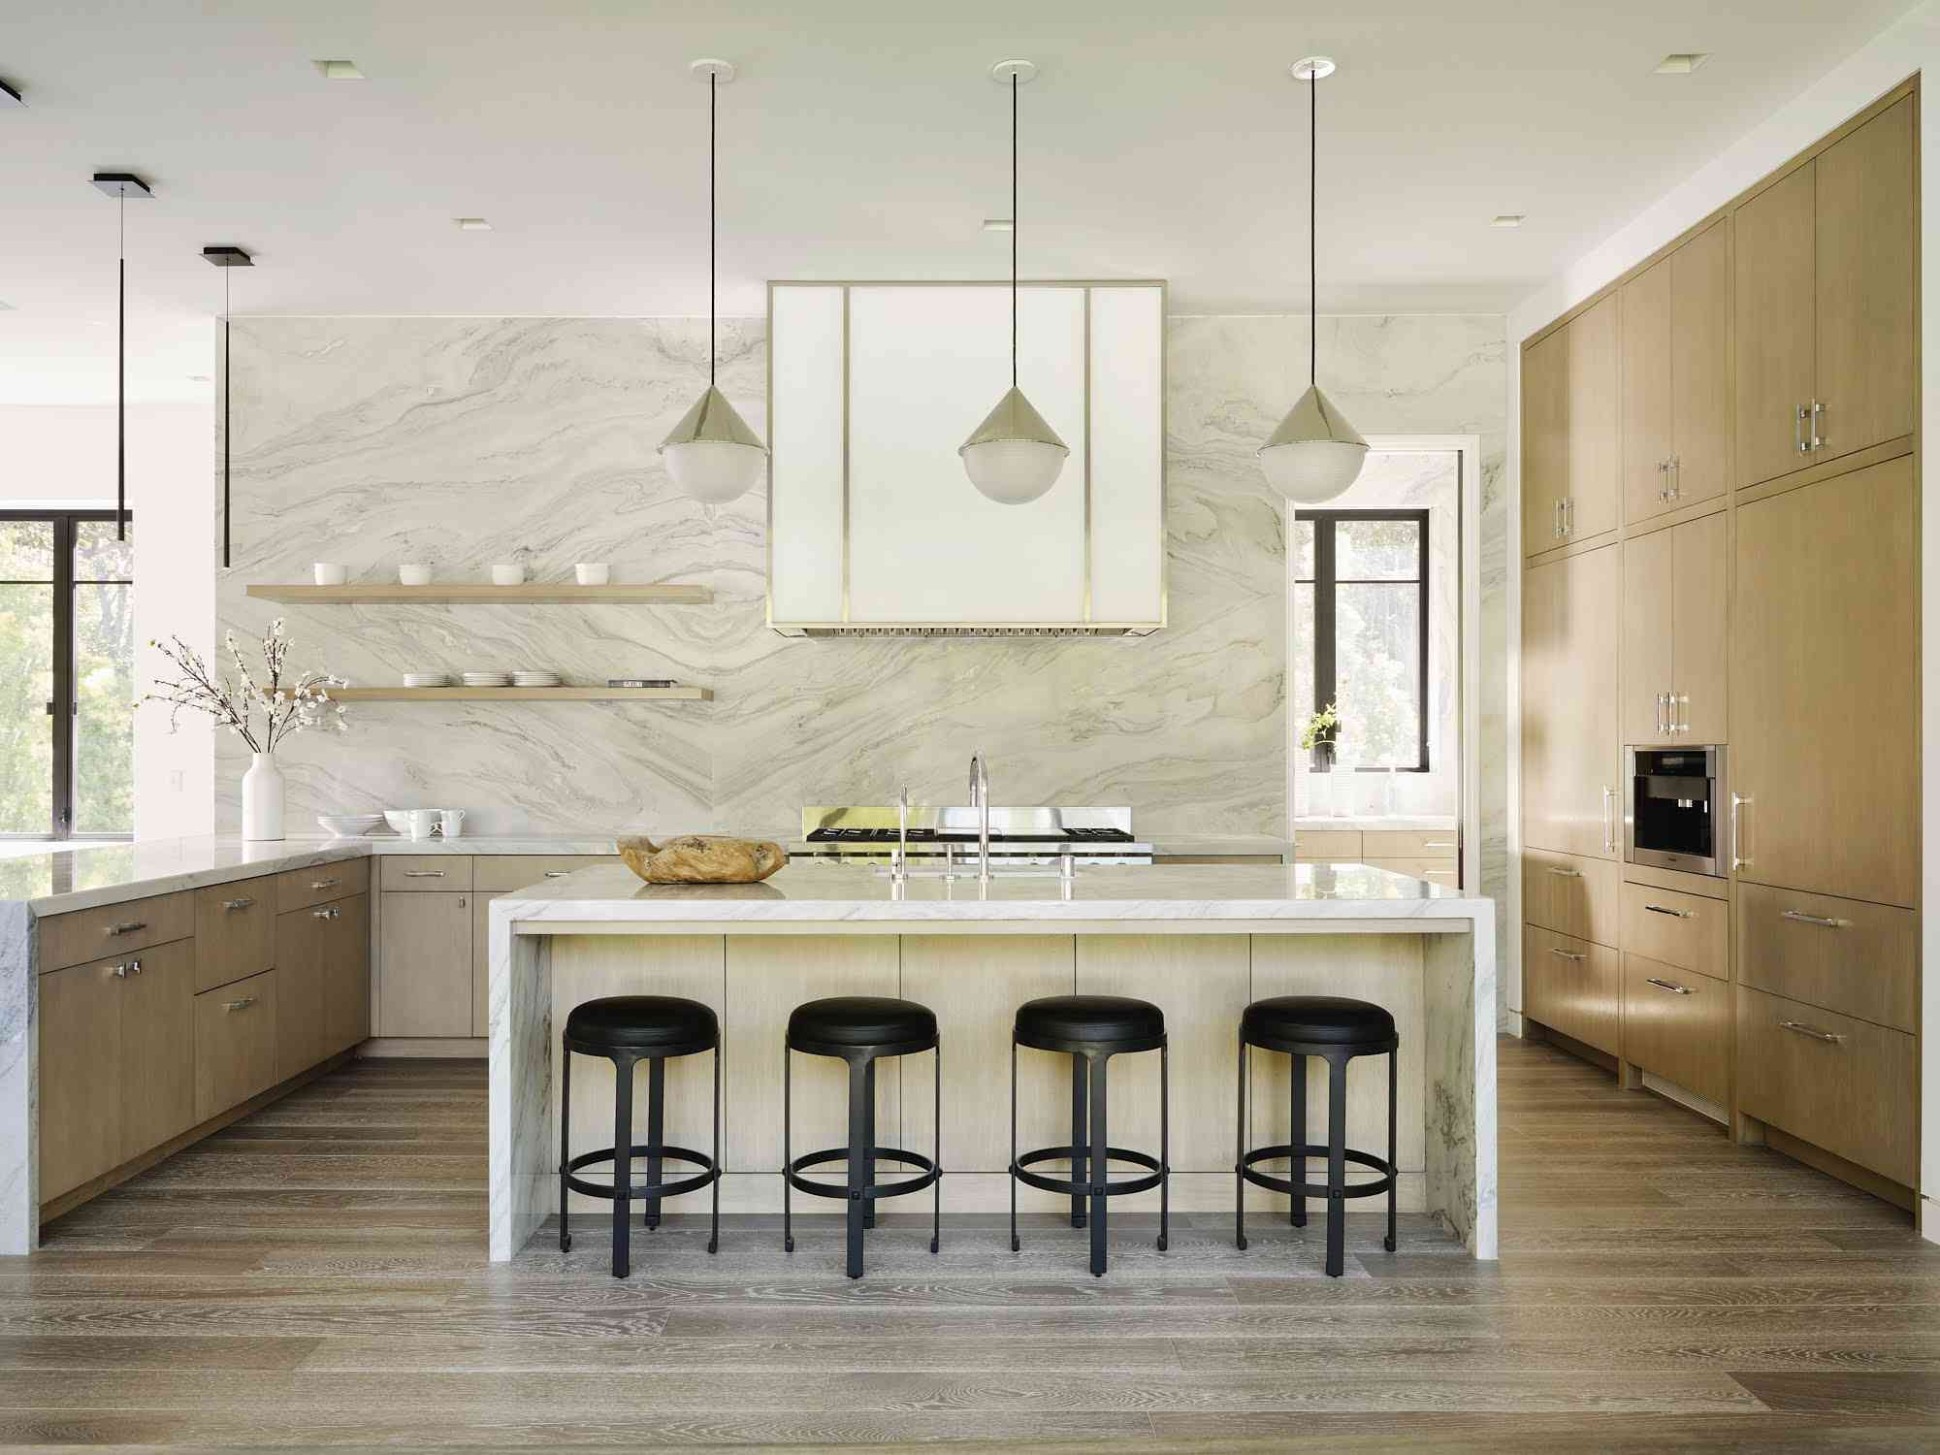 9 Polished Modern Kitchen Design Ideas to Consider - kitchen modern pictures